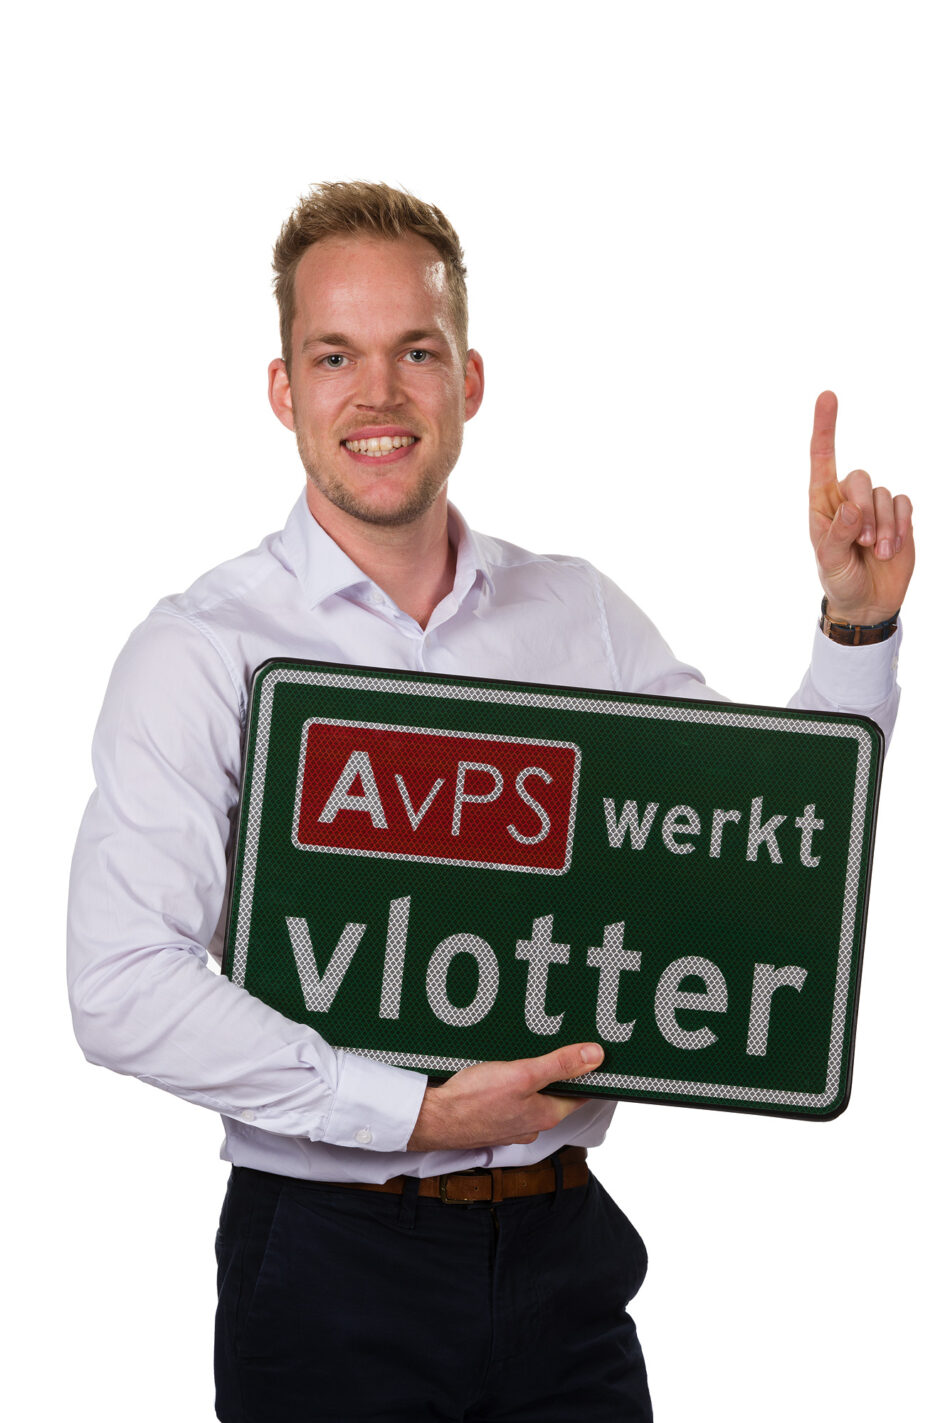 Salarisadministratie in Friesland - 10149_112 - AvPS werkt vlotter - 2000px